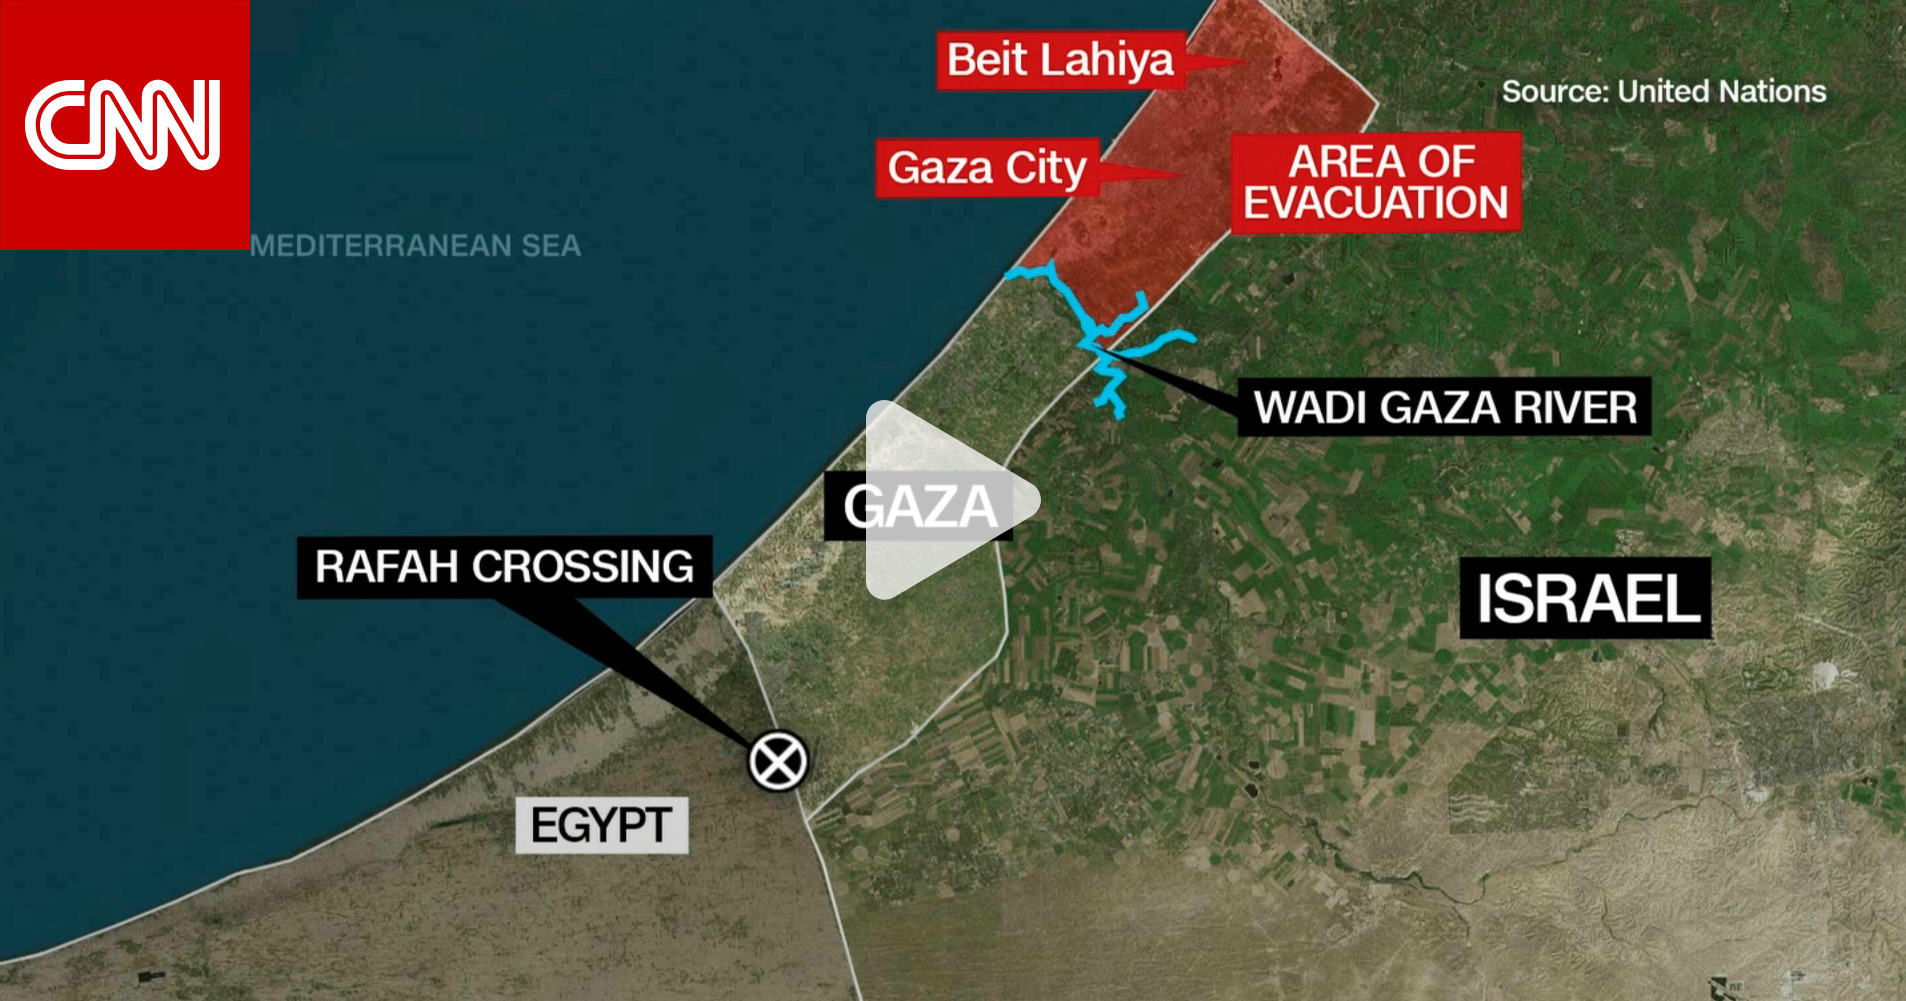 مع استعداد إسرائيل لغزو بري في غزة.. كيف يرى وزير خارجية مصر فرص ظهور حل سلمي؟